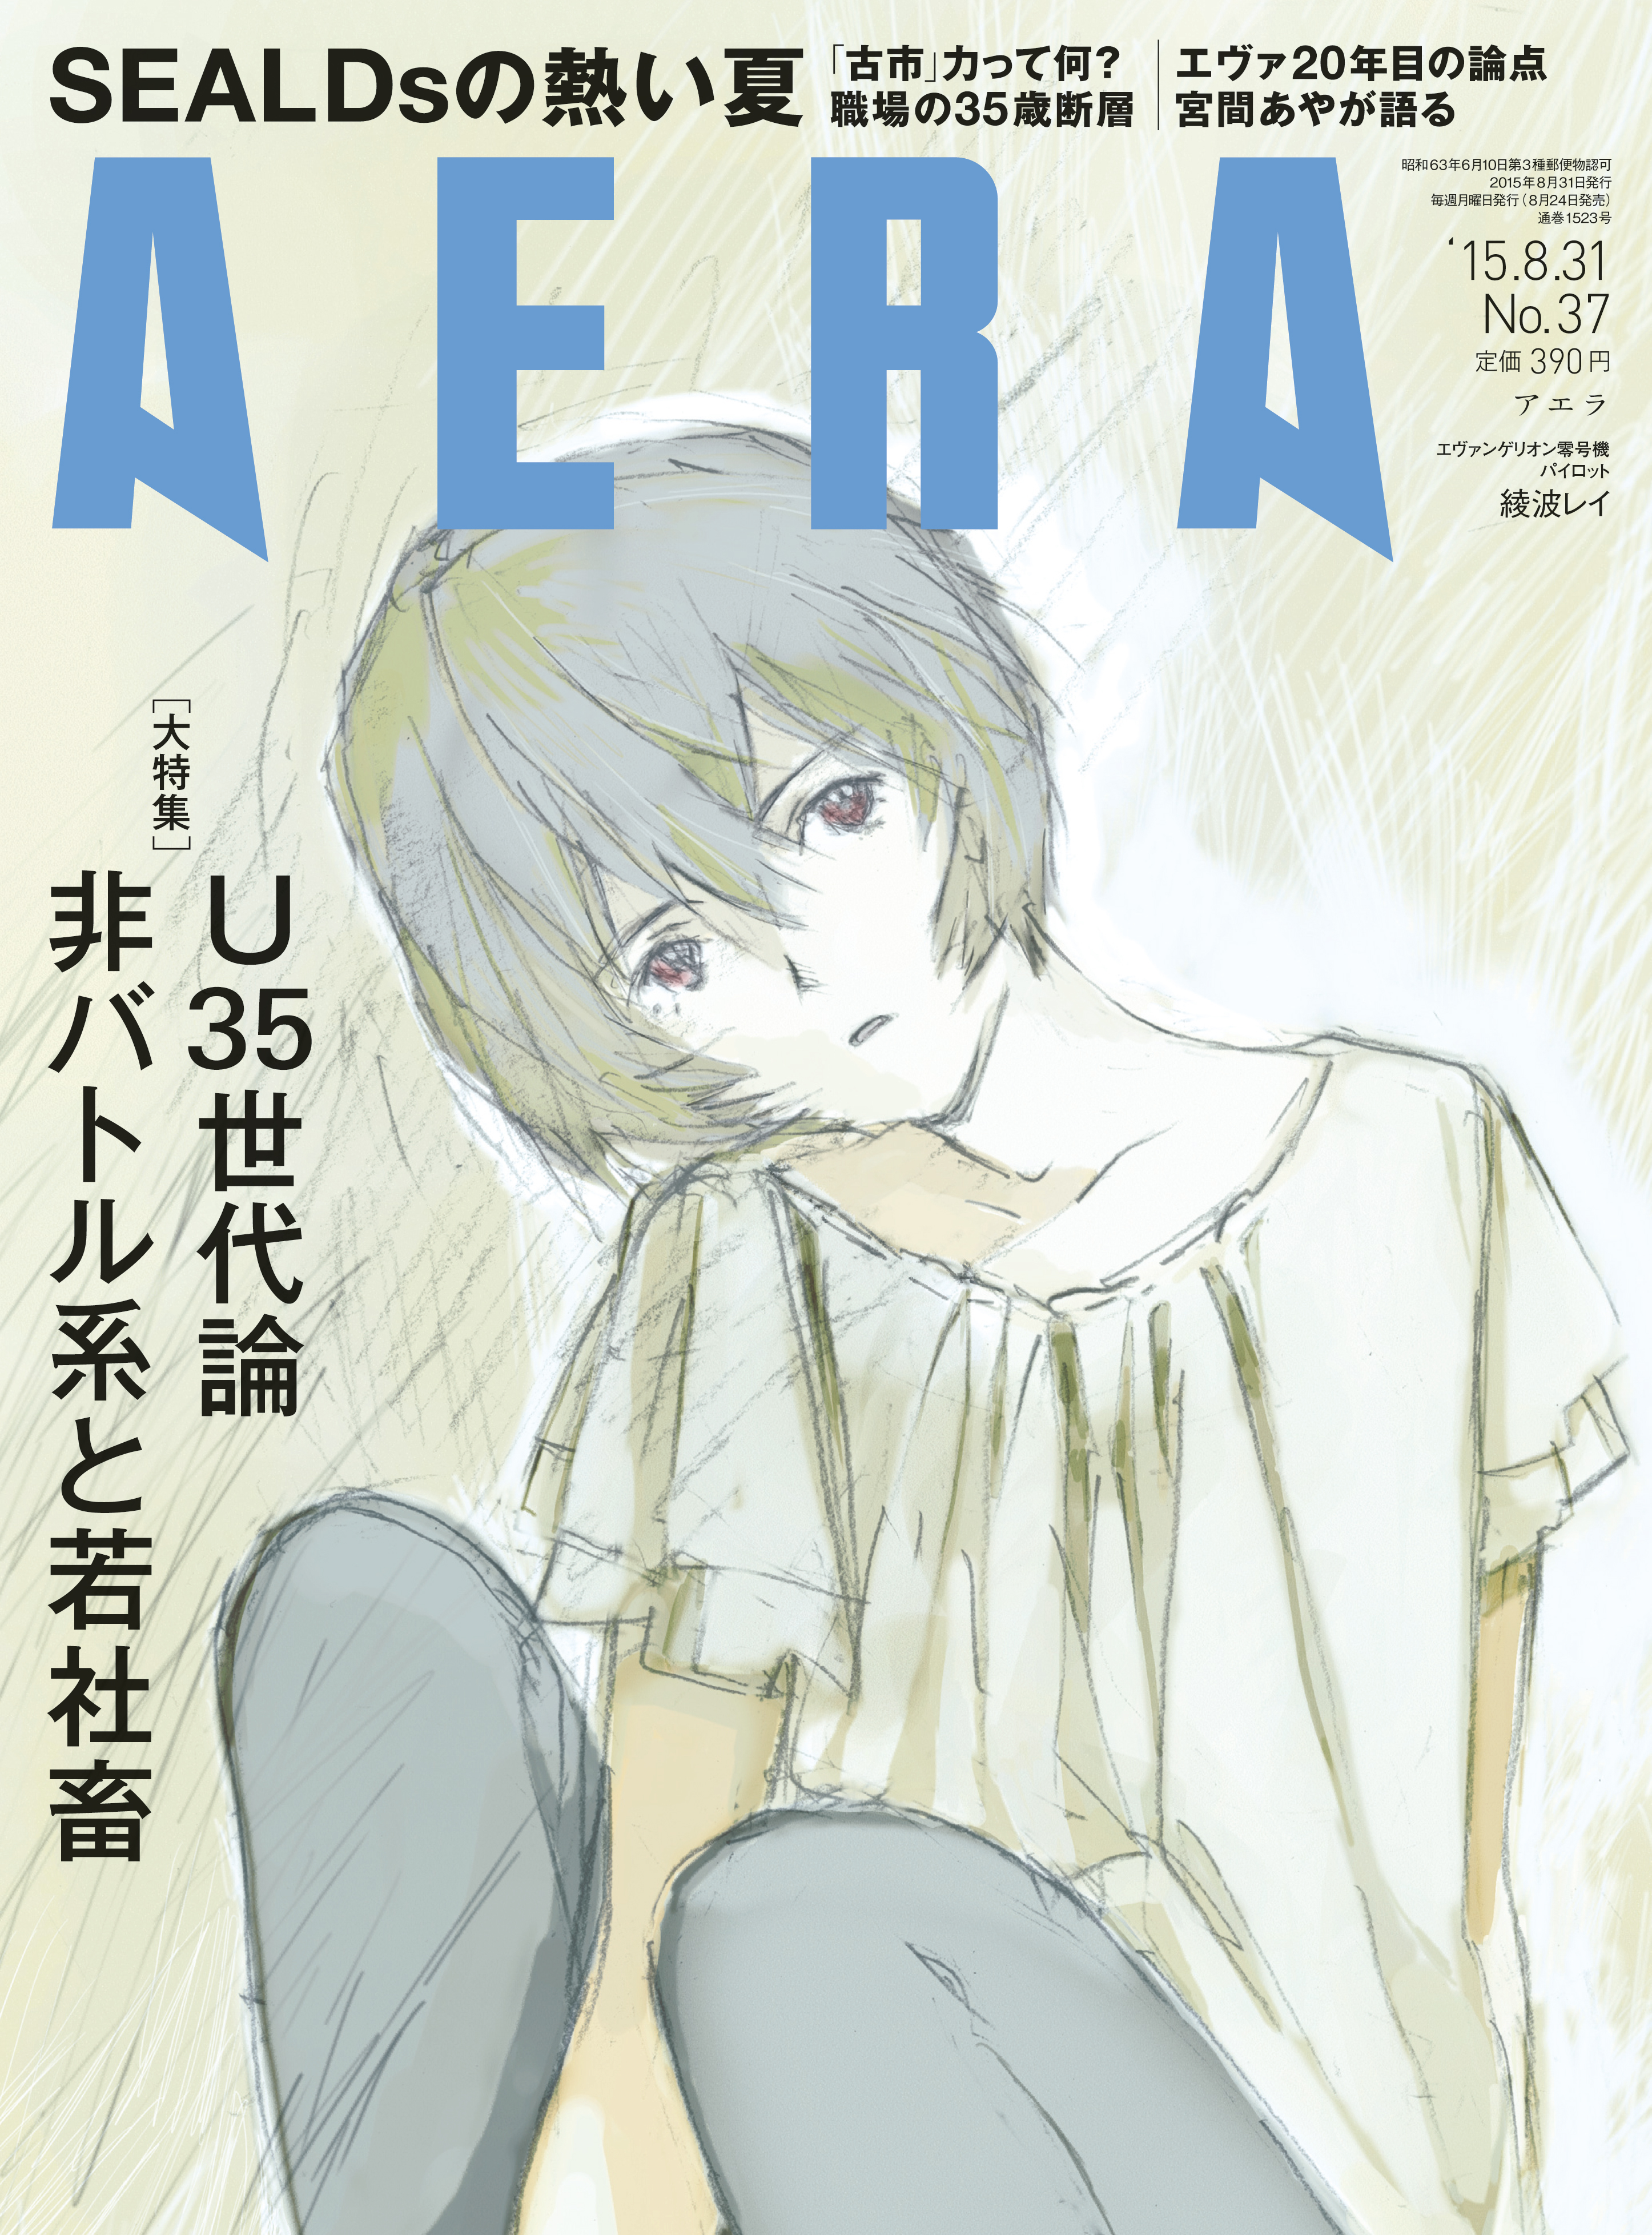 エヴァ の綾波レイがaeraの表紙に イラストは本田雄さんによる描きおろし 株式会社朝日新聞出版のプレスリリース